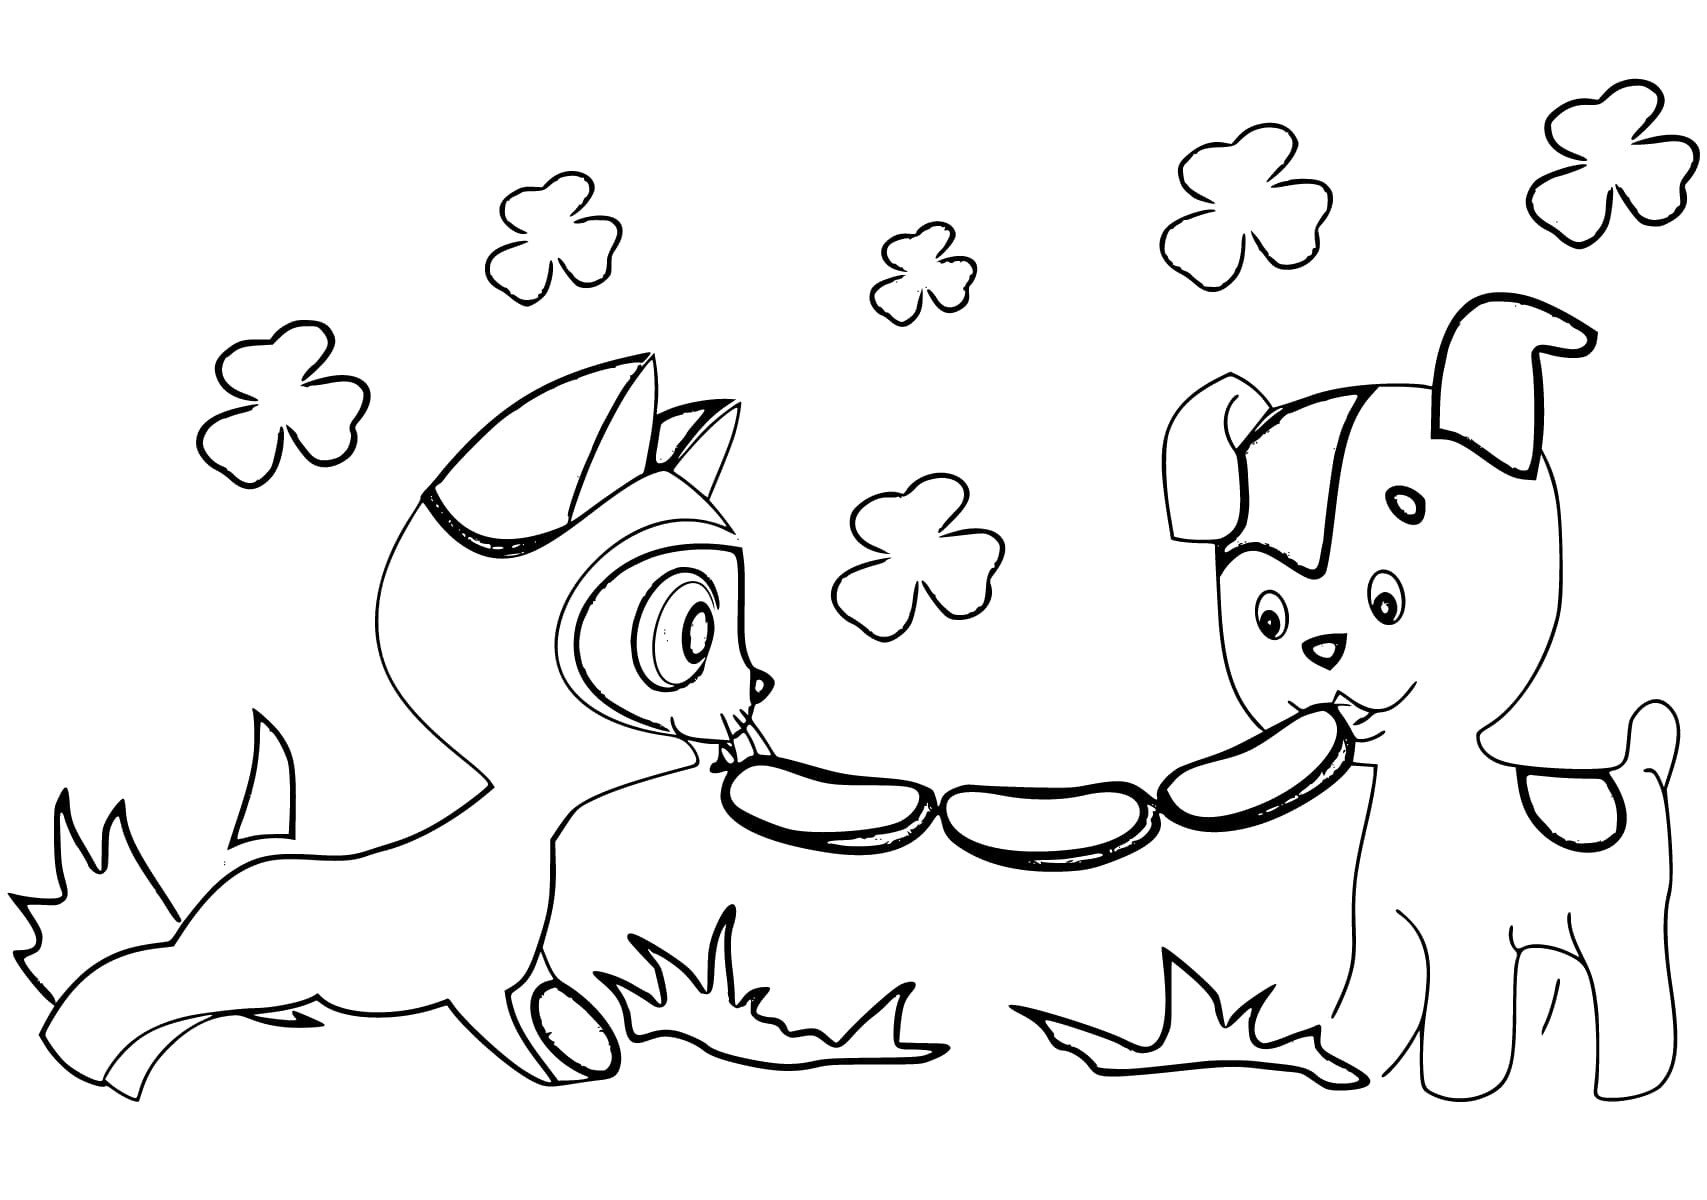 Набор для творчества Лапландия Холст раскраска котенок и щенок 21/31 см | купить, цена, отзывы